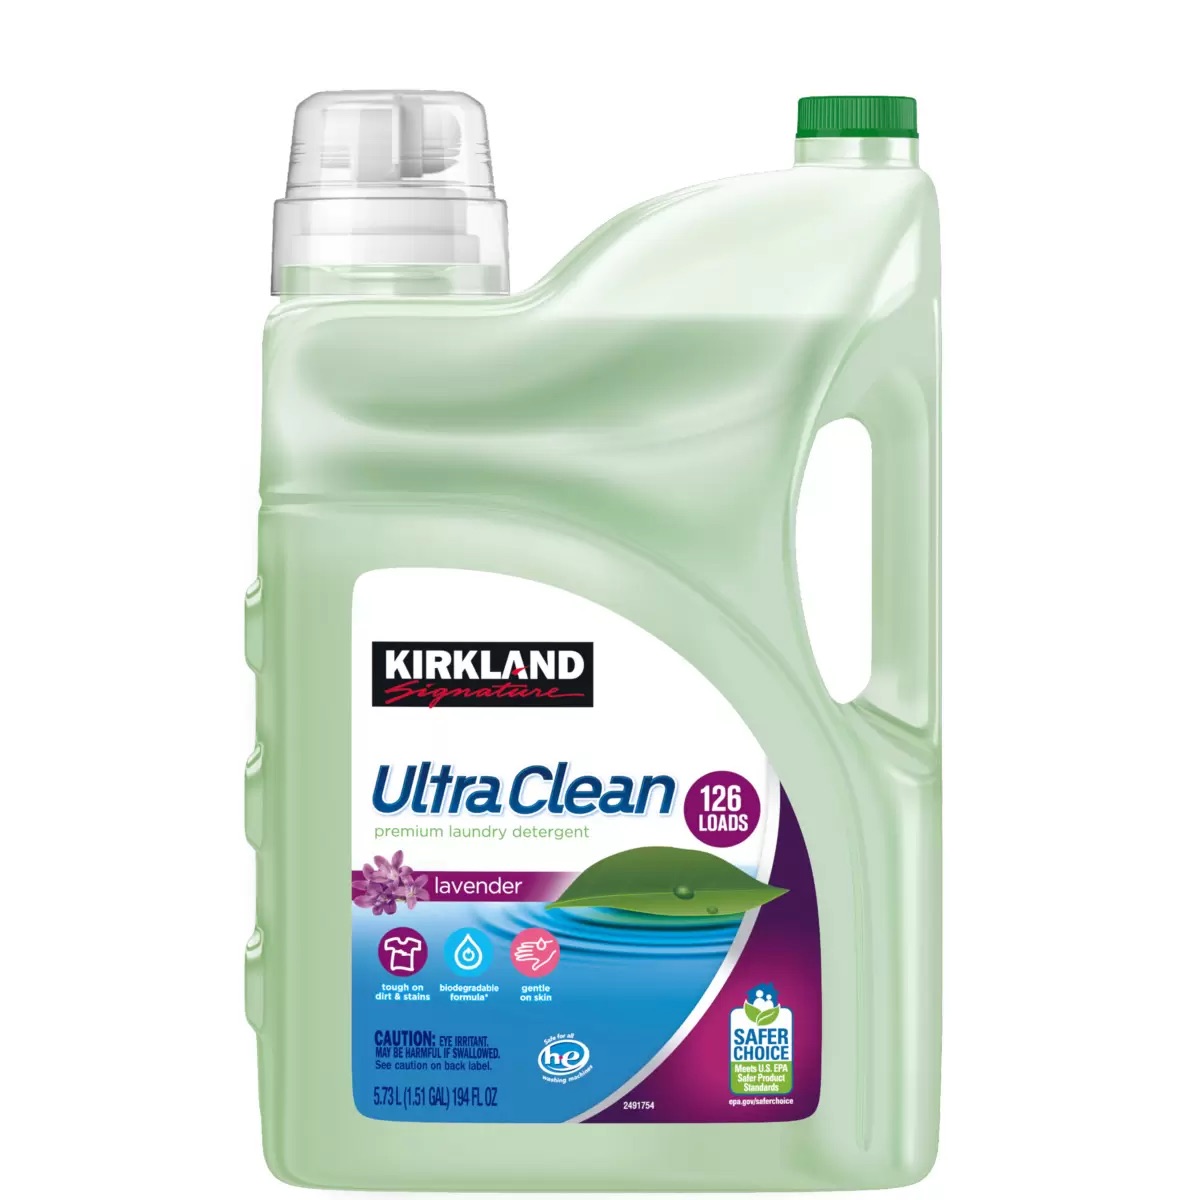 カークランドシグネチャー エコフレンドリー 液体洗濯洗剤 5.7L 126回 Kirkland Signature Environmentally Responsible Liquid Laundry Detergent 5.7L 126Loads